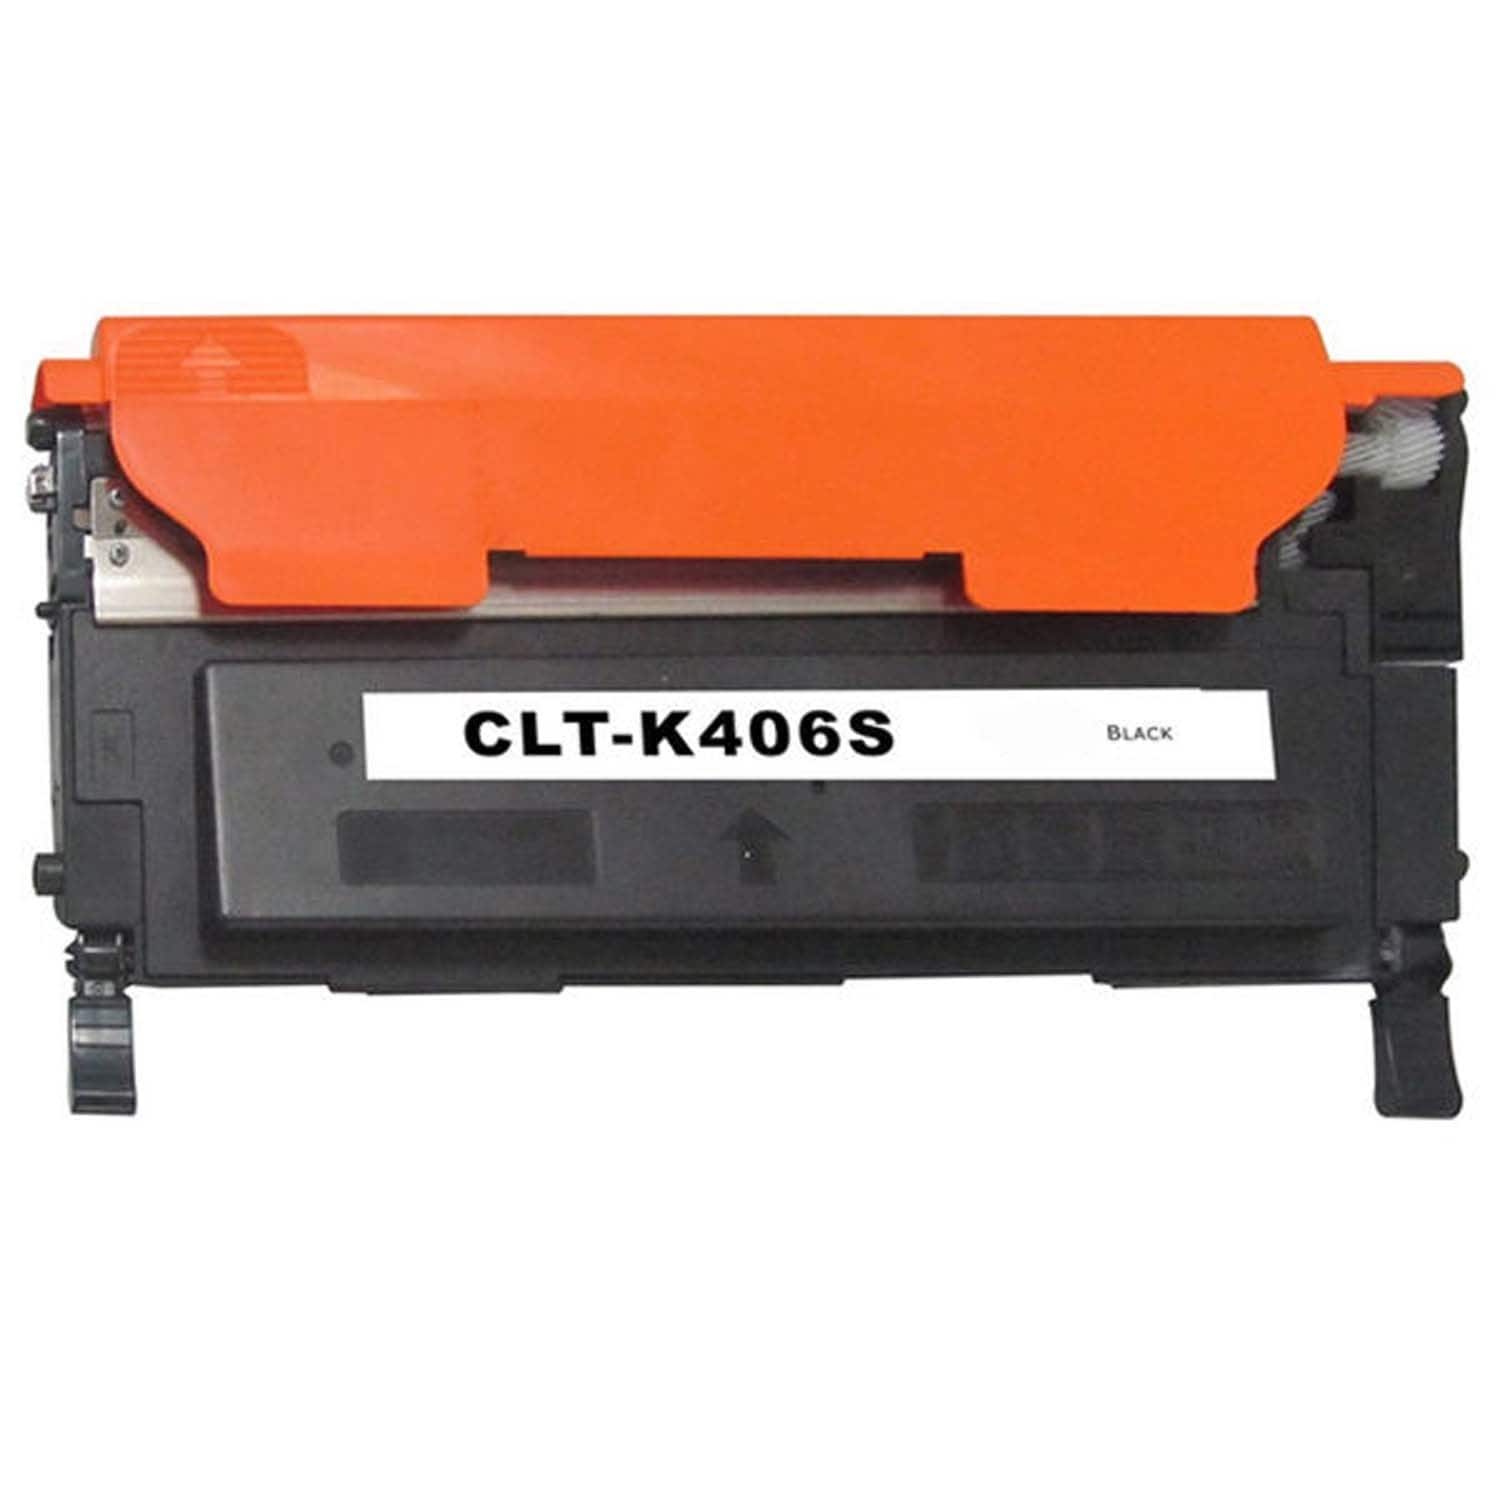 Samsung Clt k406s Compatible Black Laser Toner Cartridge